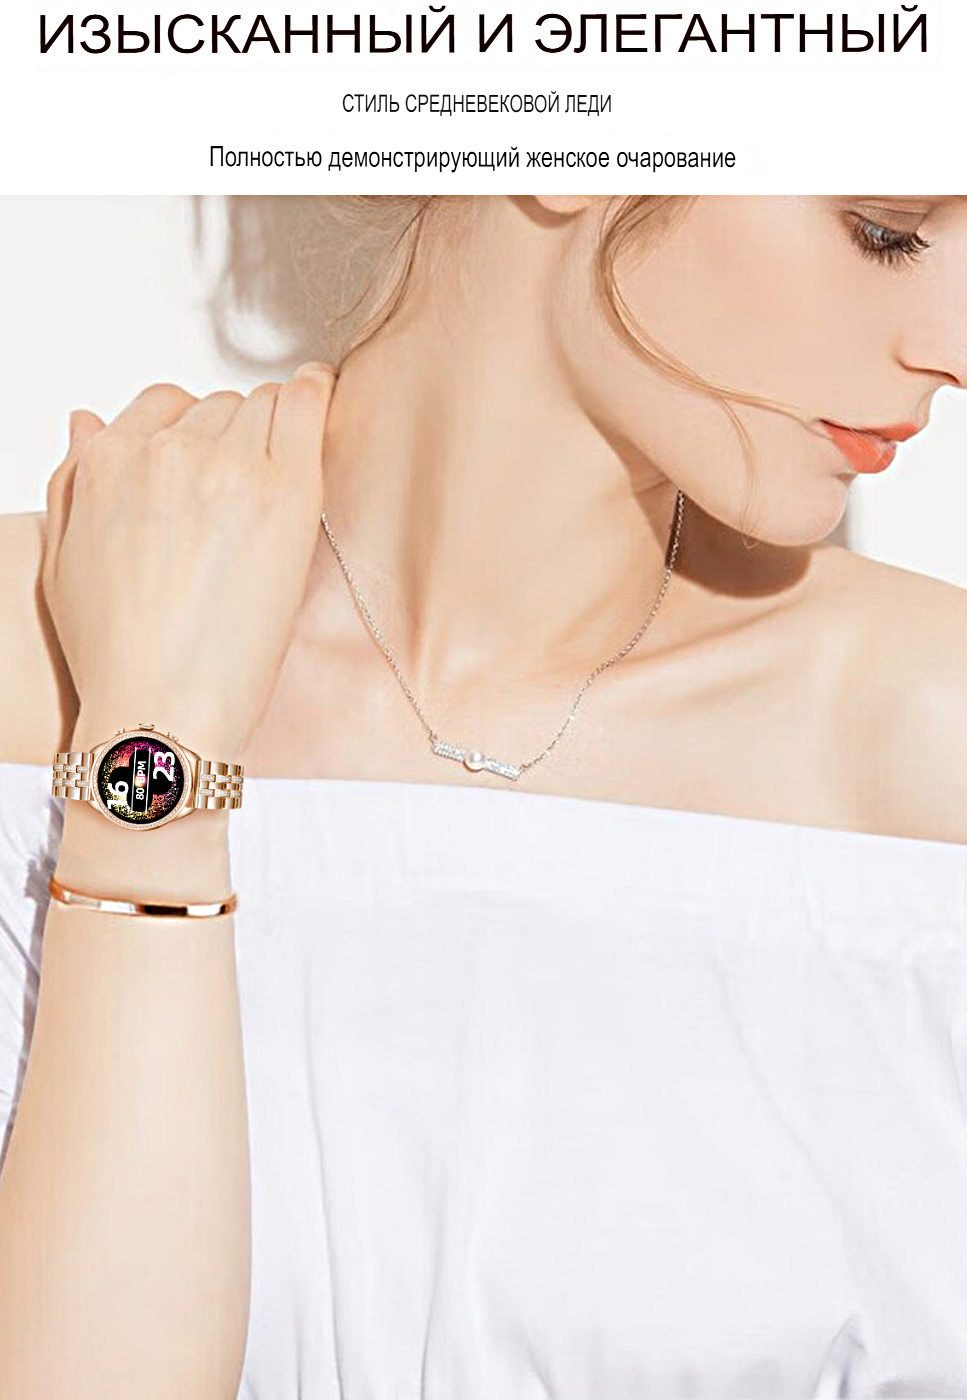 Умные часы женские Smart Watch GEN 9, Смарт-часы для женщин 2023, iOS, Android, Bluetooth звонки, 2 ремешка, WinStreak